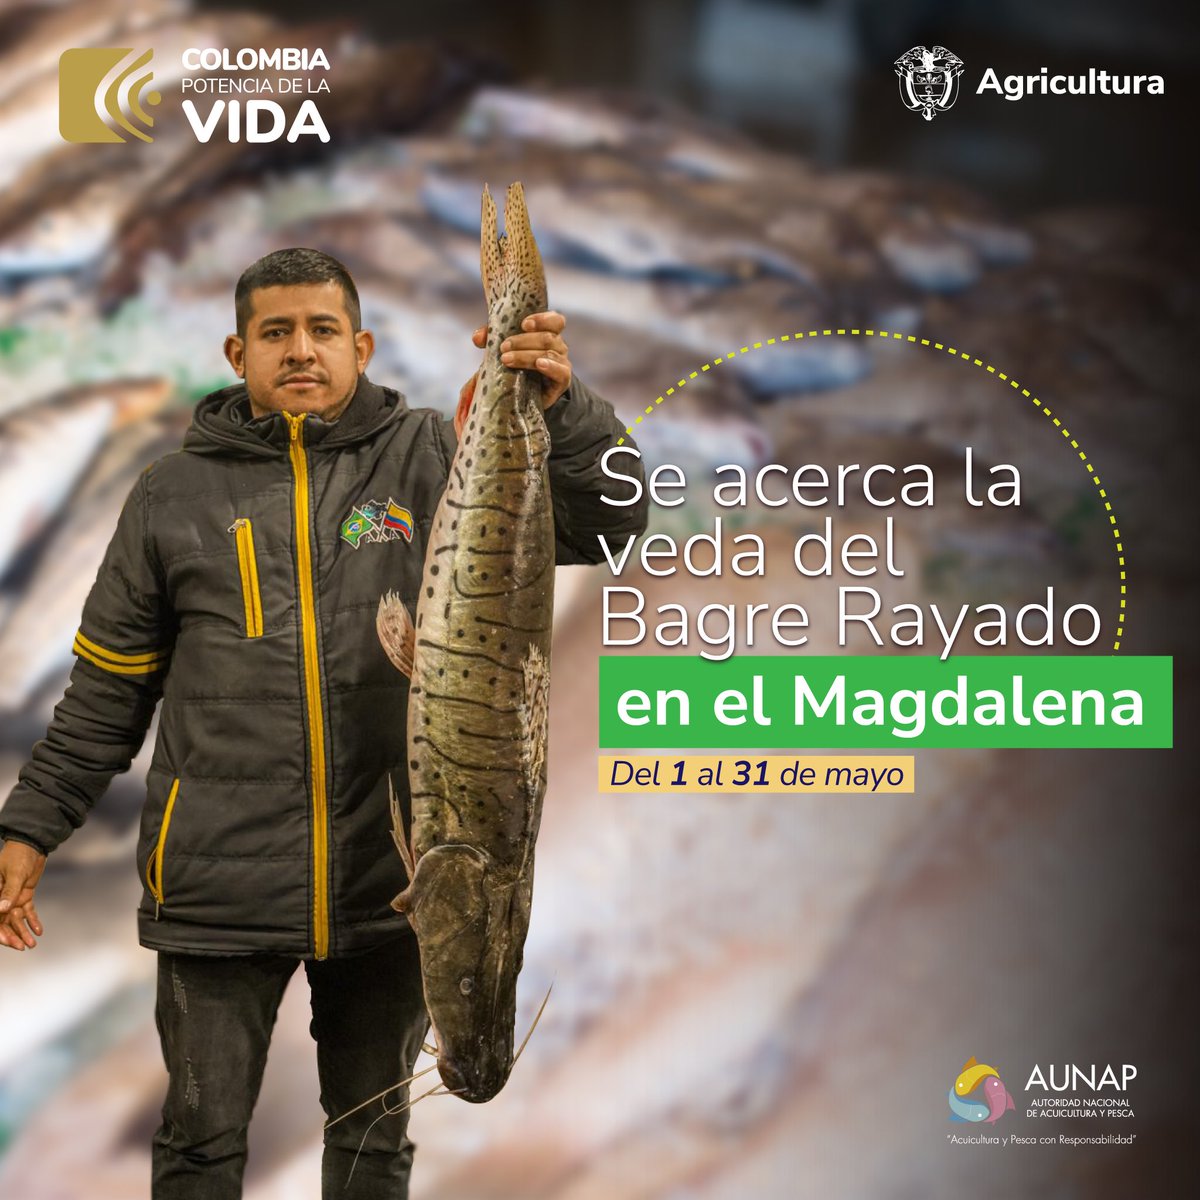 La veda del Bagre Rayado va del 1 al 30 de mayo de 2024, permitirá la reproducción de esta especie nativa y emblemática de la cuenca del Magdalena.
 
El Bagre es una de las especies con mayor índice de captura en el río #Magdalena, debido a su valor comercial. #PescaSostenible